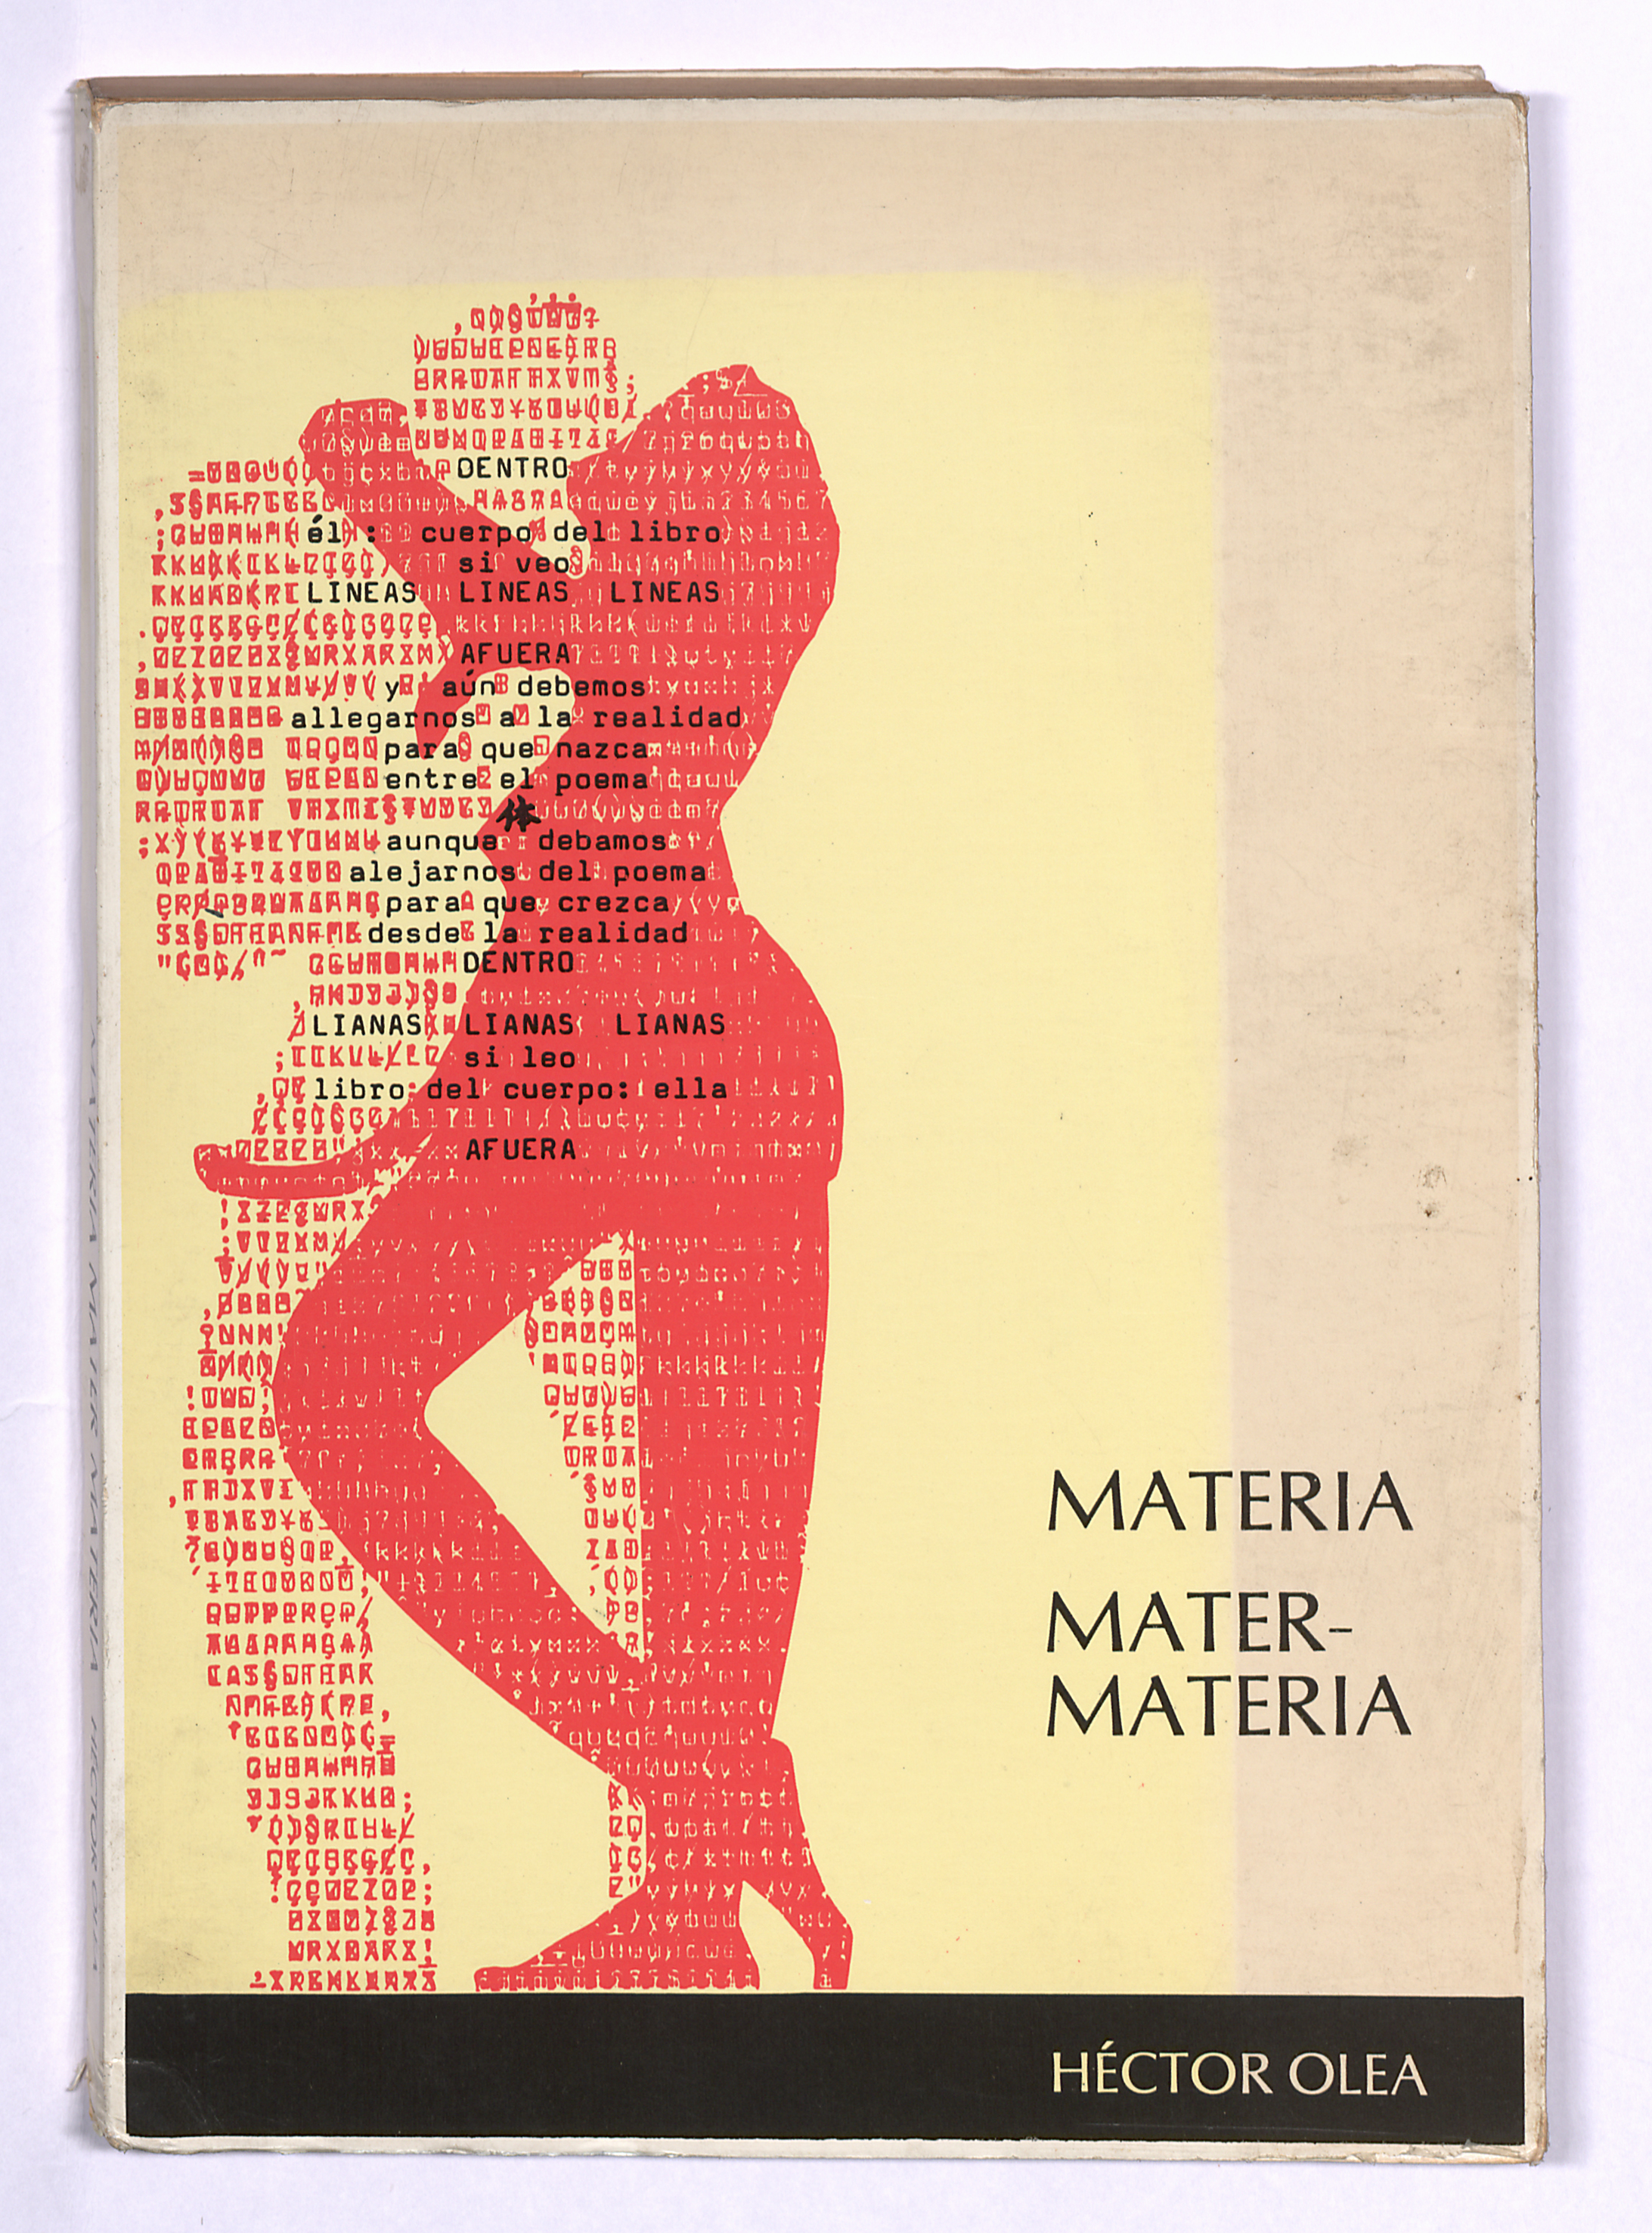 Hector Olea_Materia, mater, materia